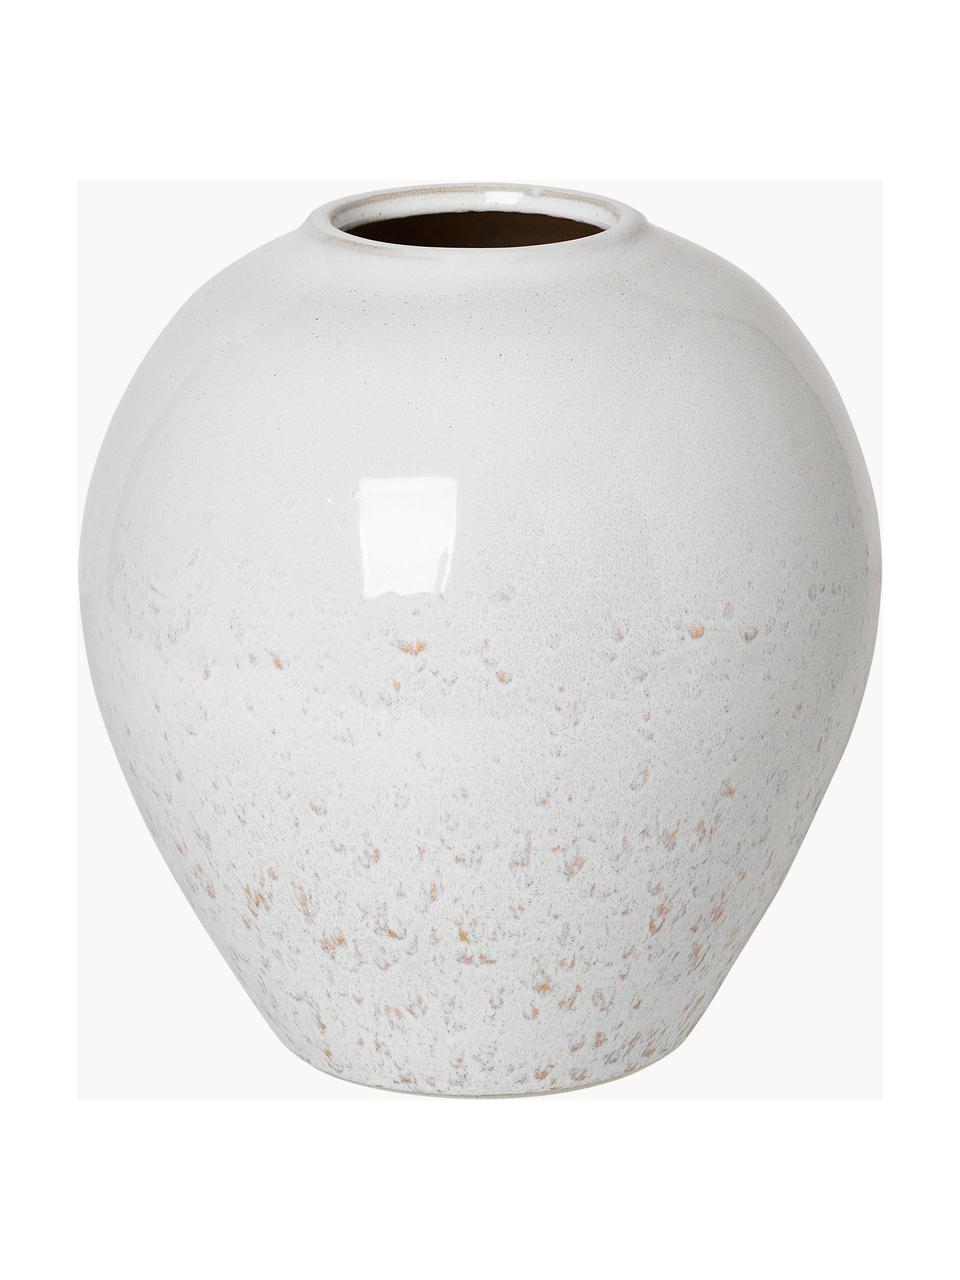 Handgefertigte Vase Ingrid aus Keramik, H 26 cm, Keramik, glasiert, Weiss, gesprenkelt, Ø 24 x H 26 cm